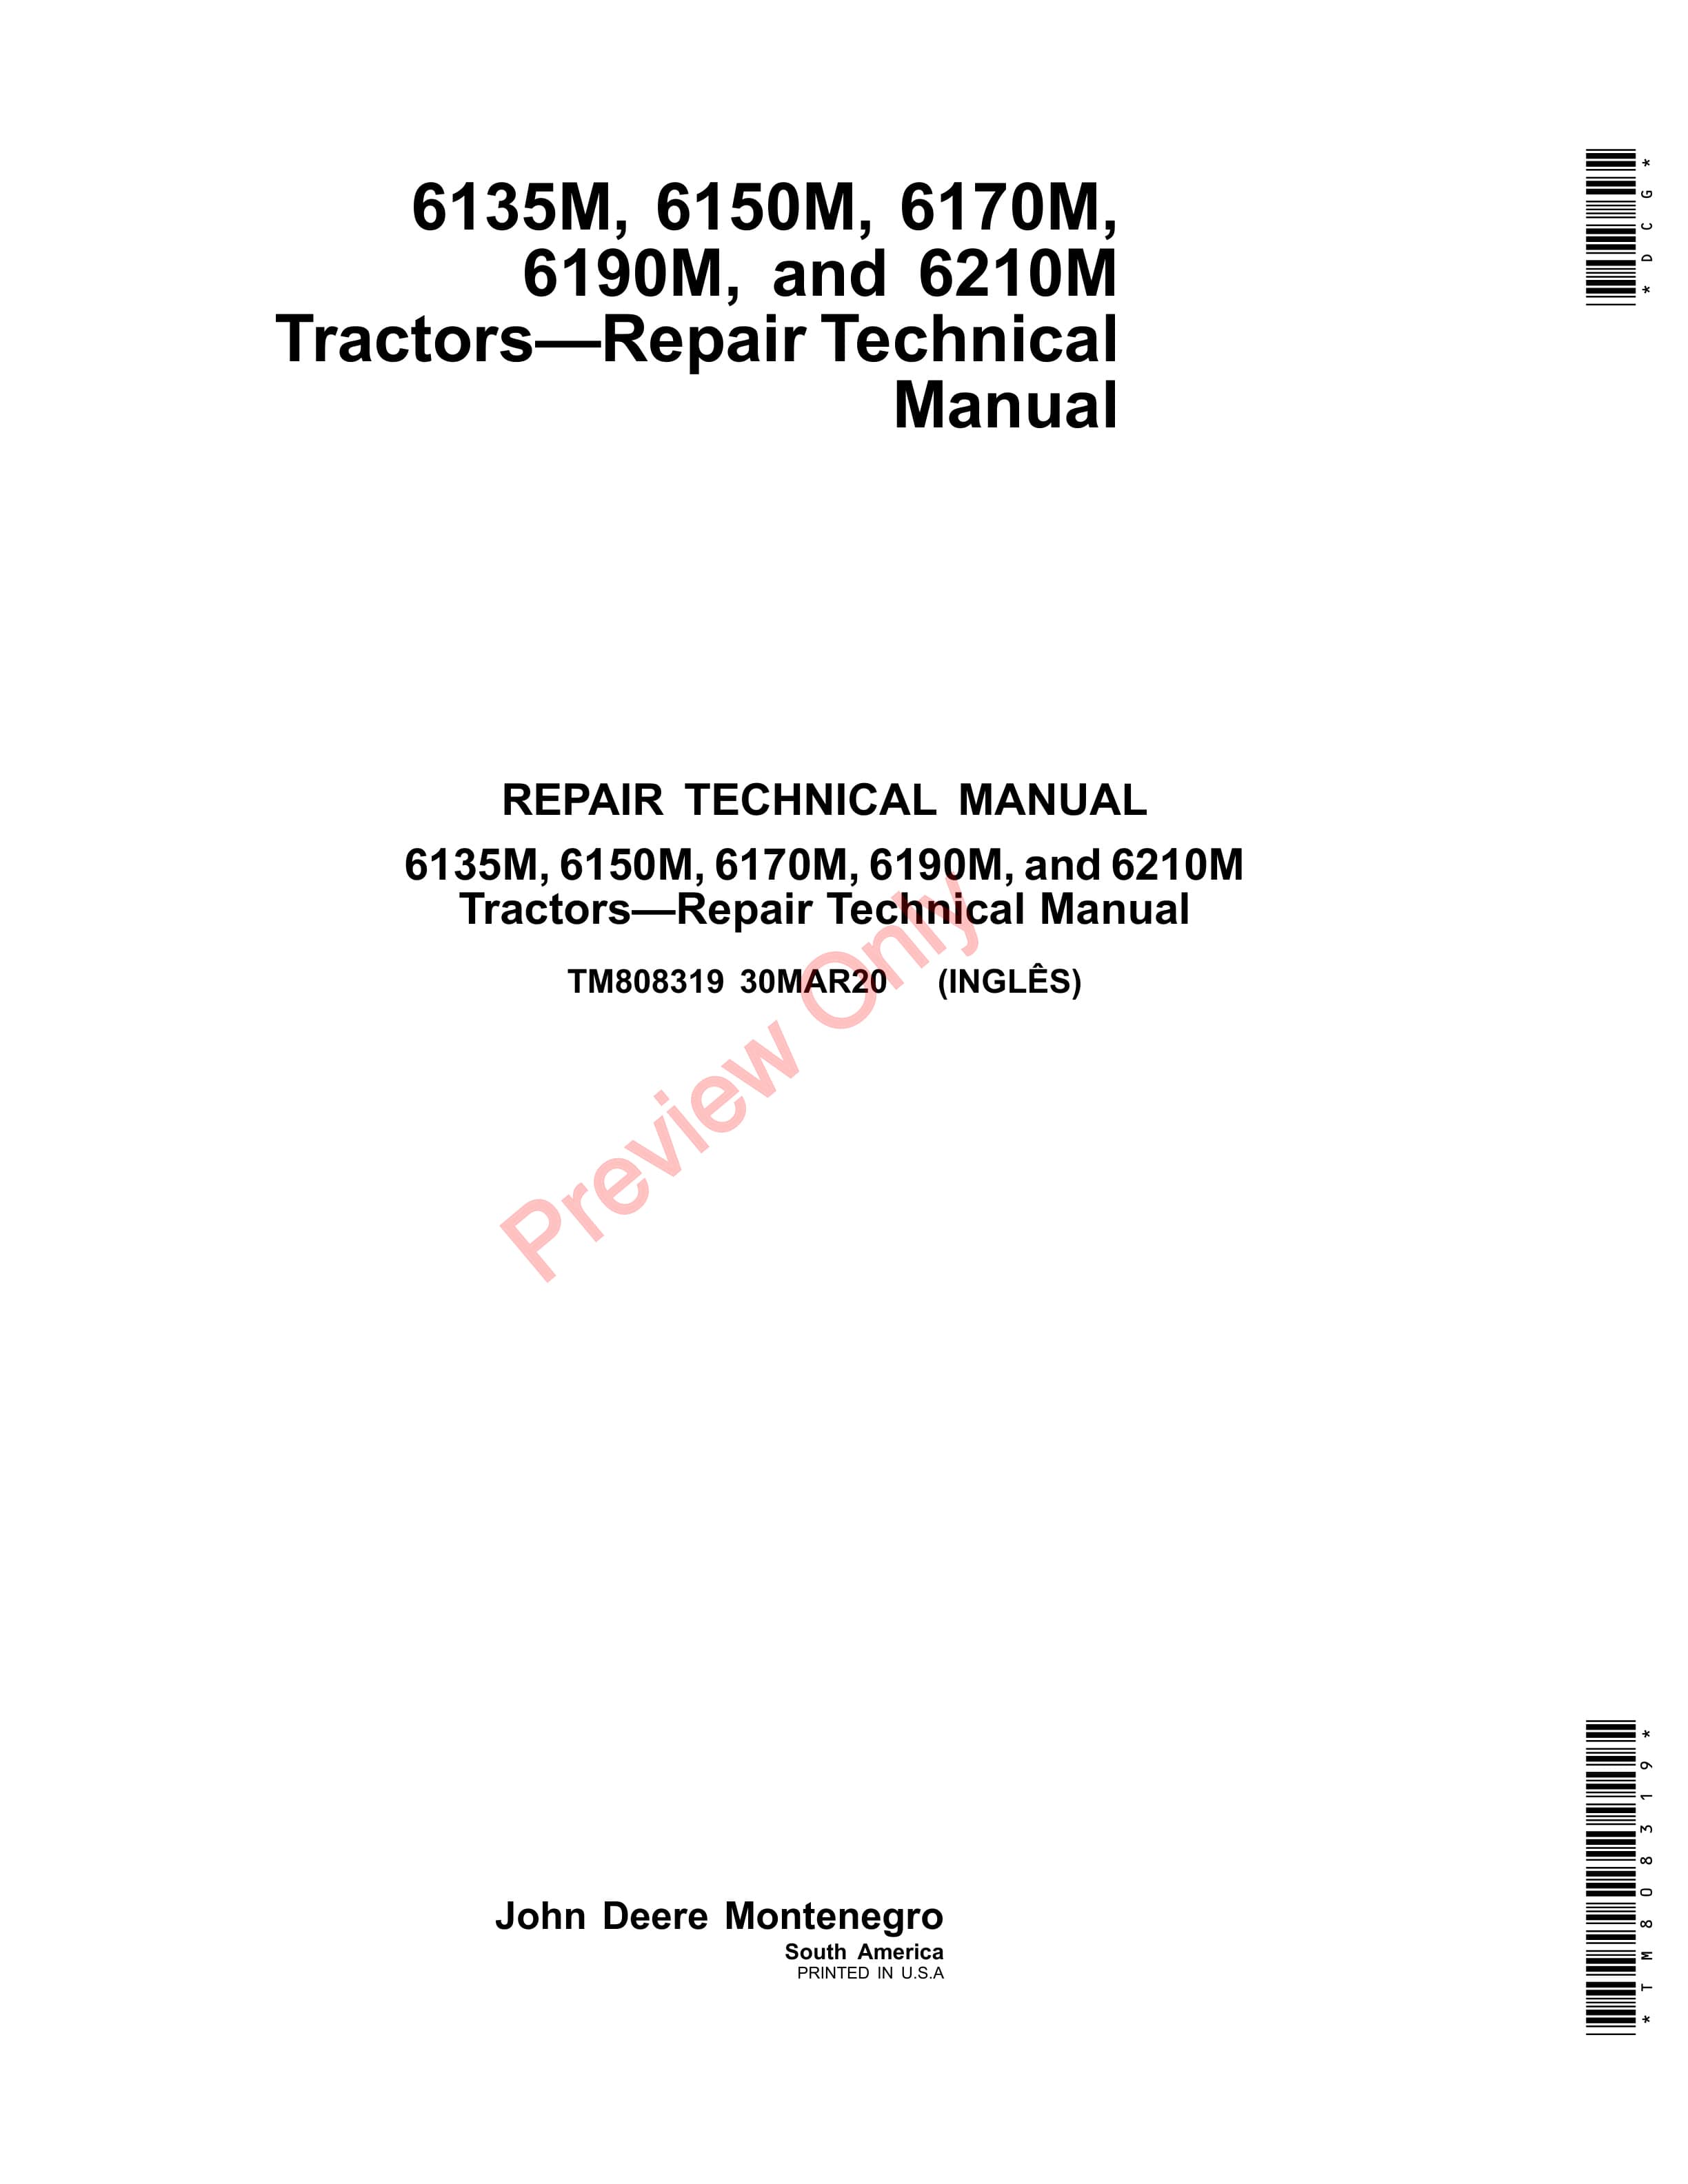 John Deere 6135M 6150M 6170M 6190M and 6210M Tractors Repair Technical Manual TM808319 30MAR20 1